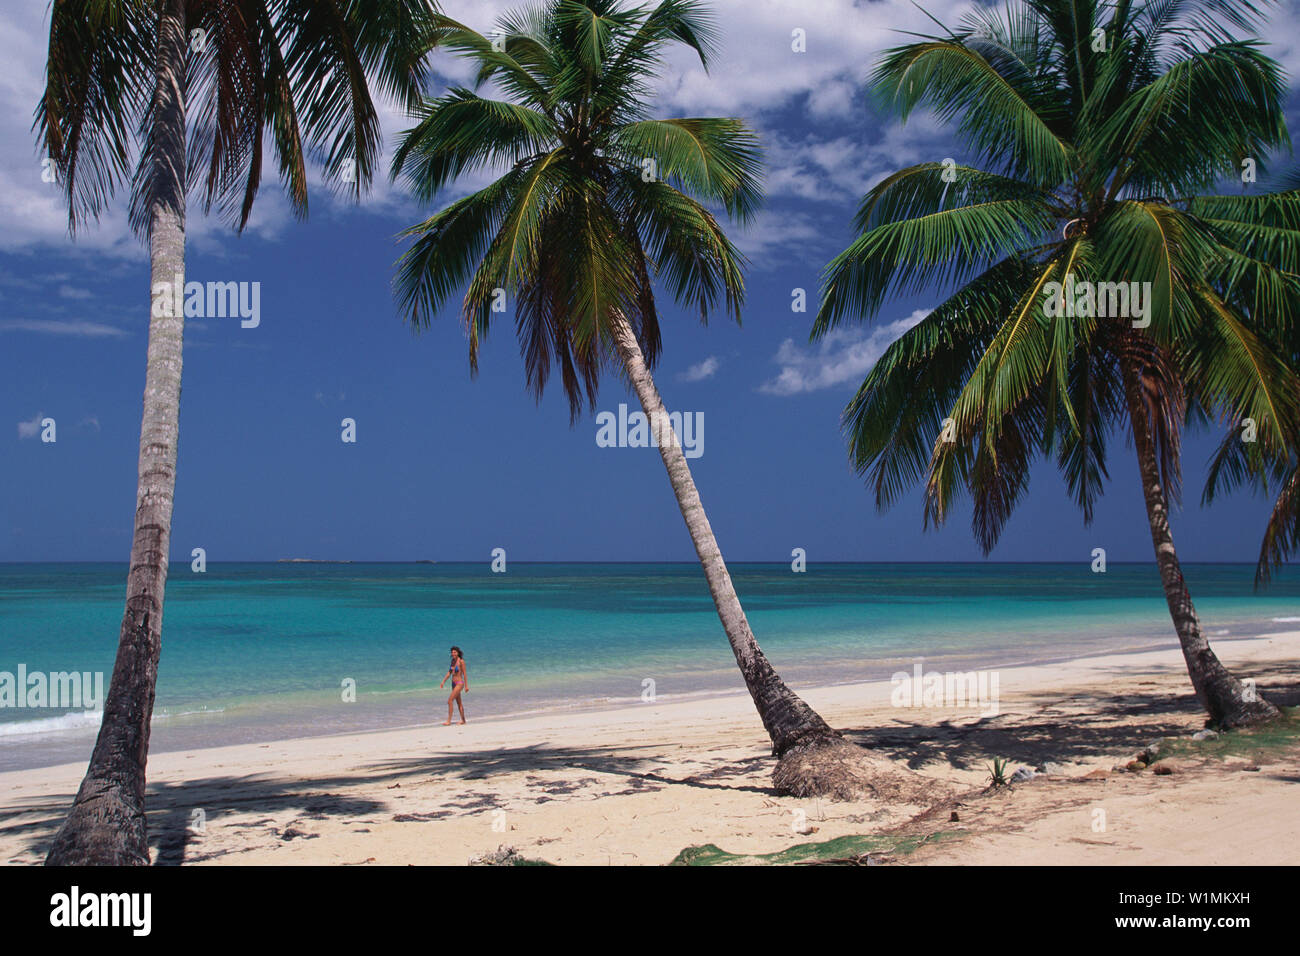 Palmenstrand, Dominikanische Republik Karibik Foto de stock